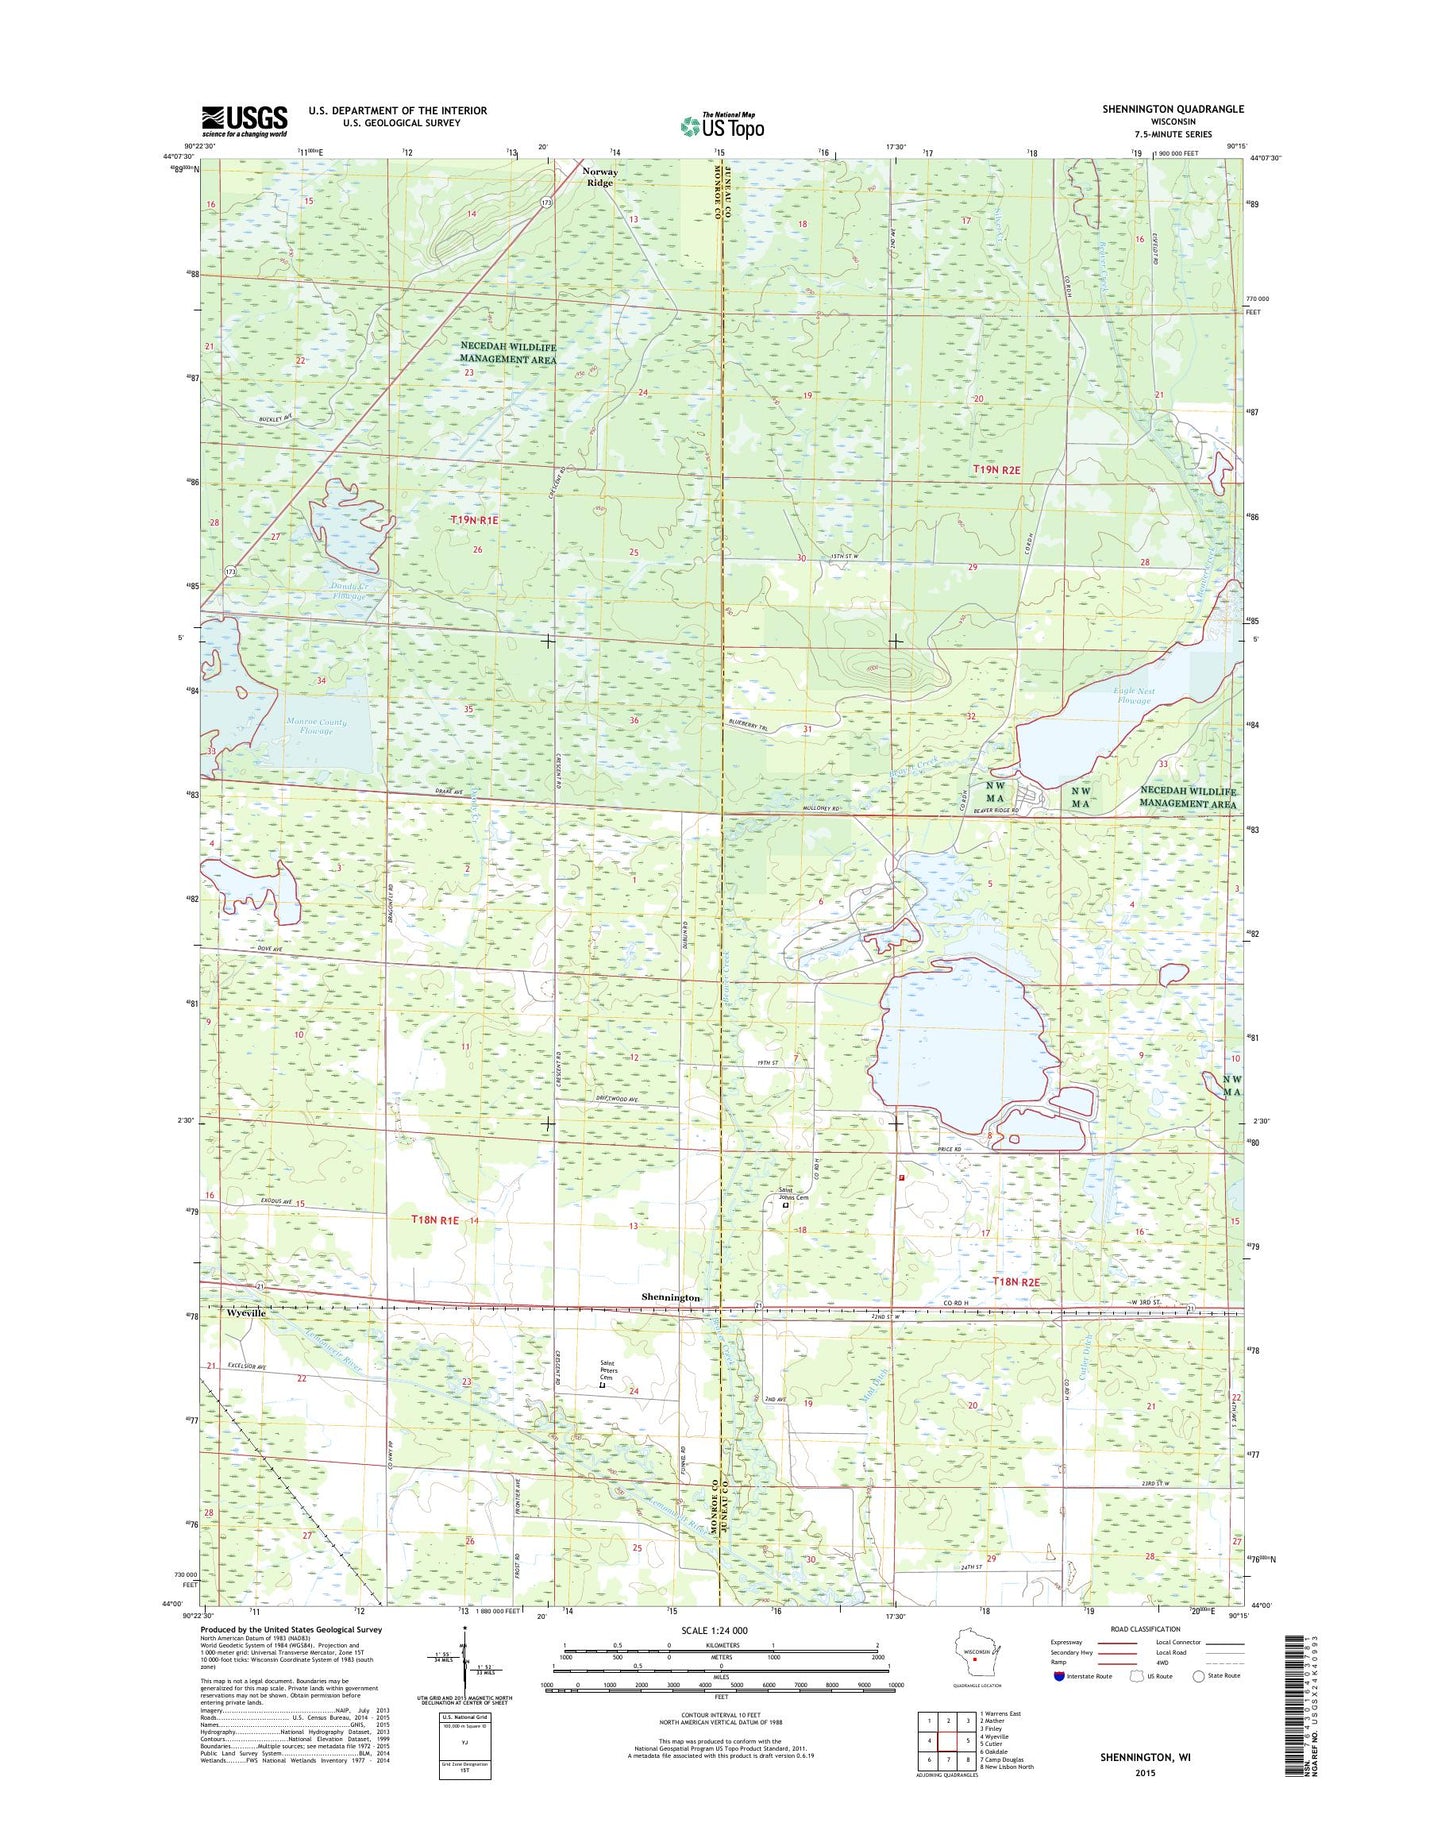 Shennington Wisconsin US Topo Map Image